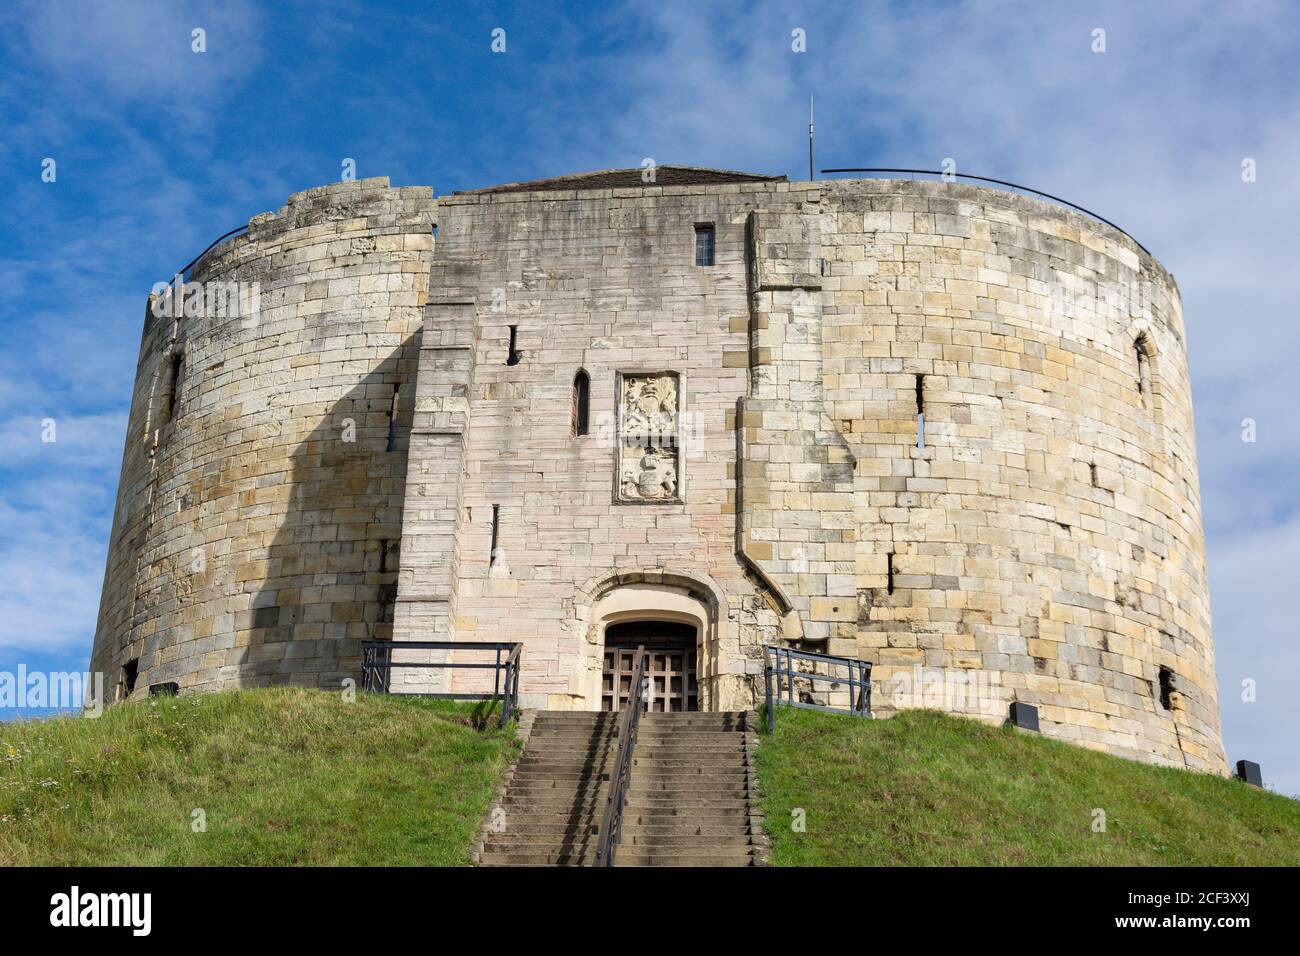 Clifford's Tower (Keep of York Castle) aus dem 13. Jahrhundert, Tower Street, York, North Yorkshire, England, Vereinigtes Königreich Stockfoto